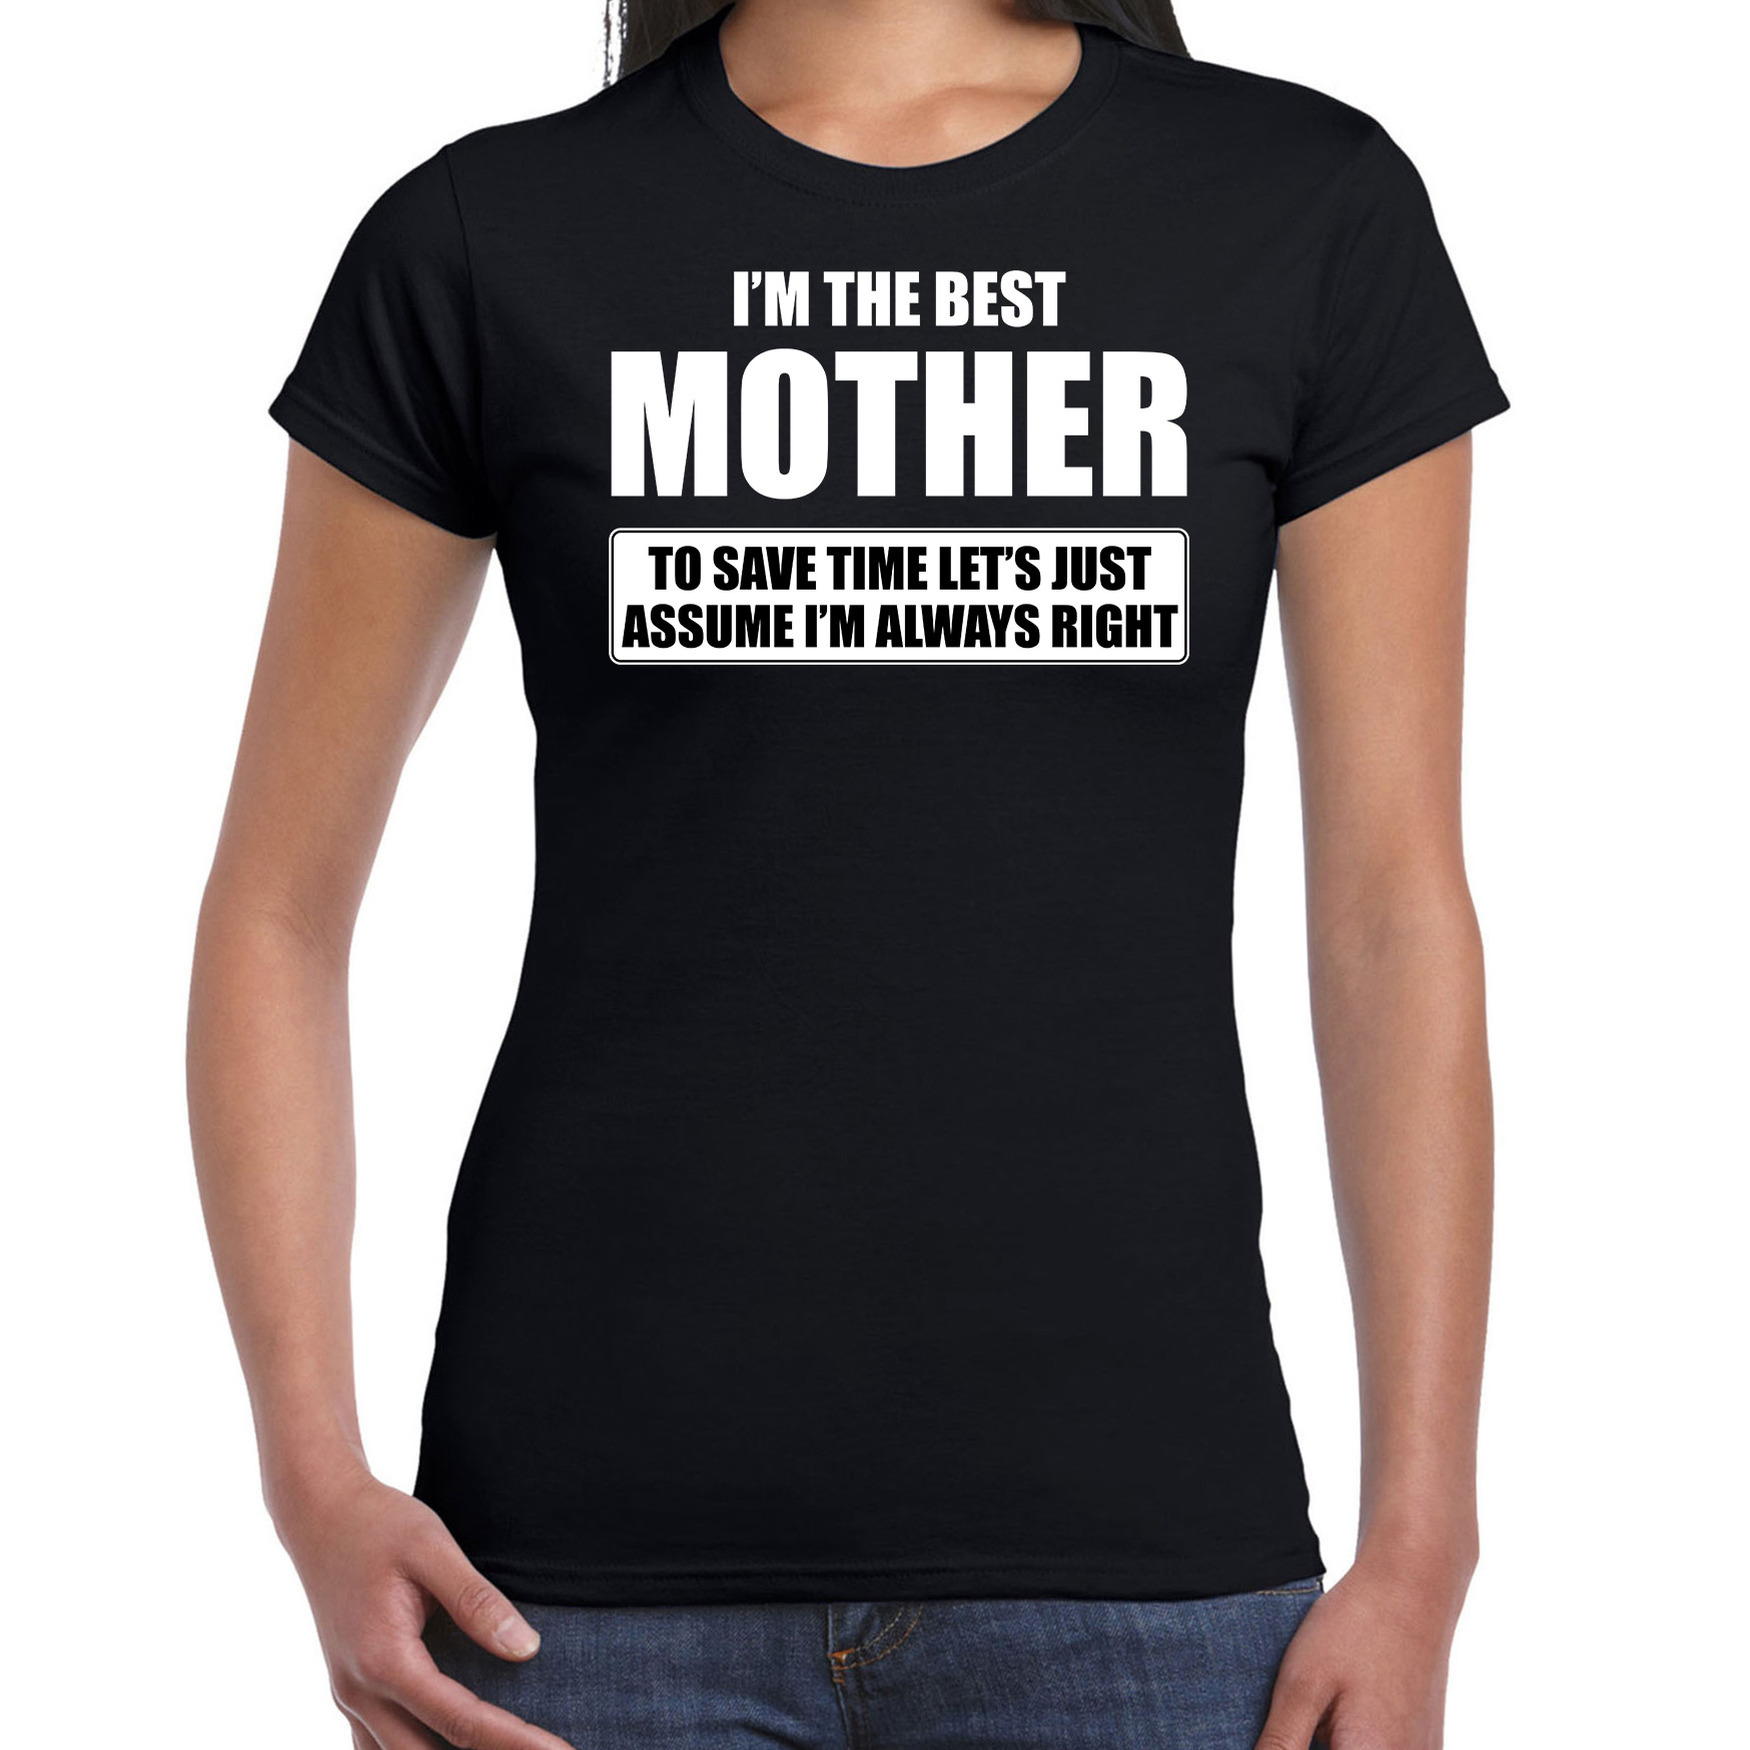 I'm the best mother t-shirt zwart dames - De beste moeder cadeau